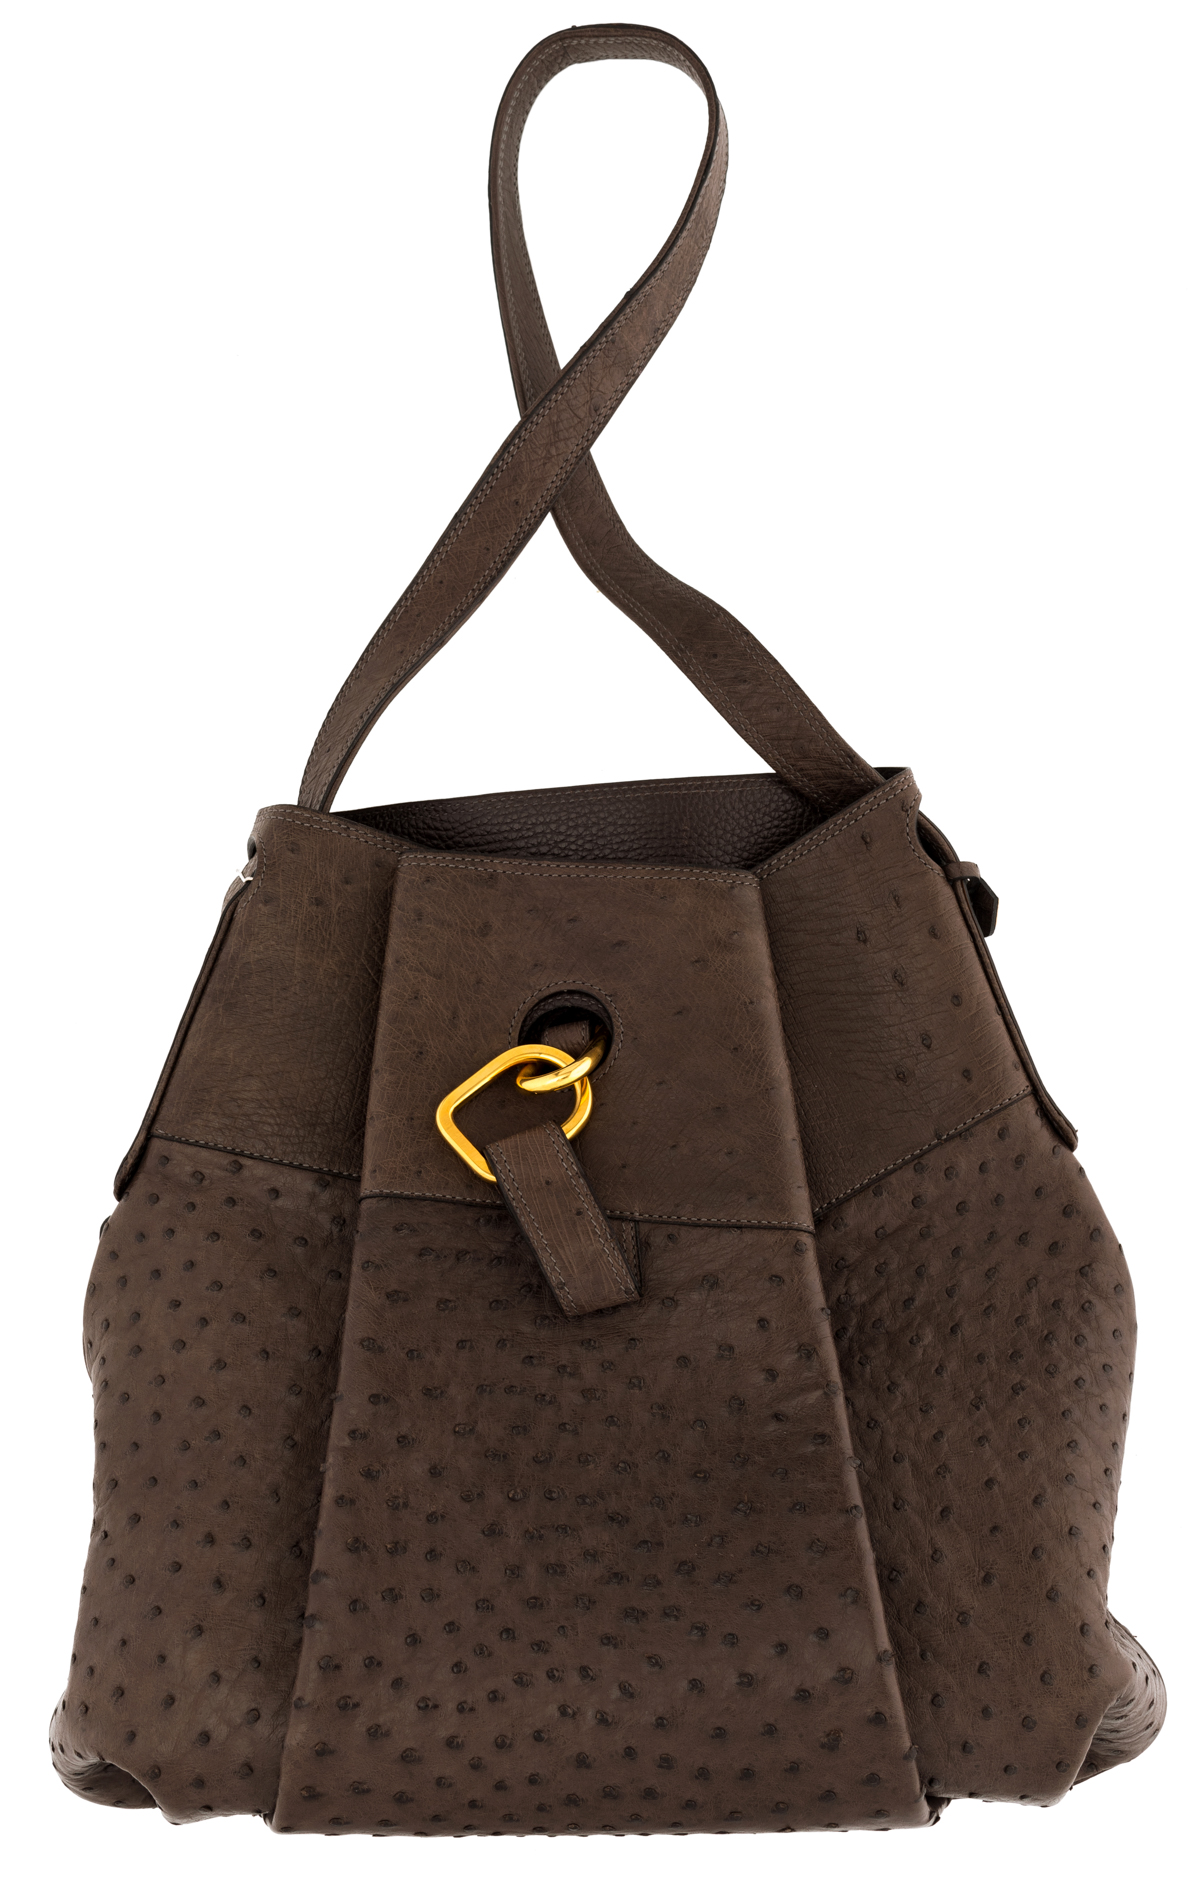 A Delvaux ostrich leader handbag, H 34 cm